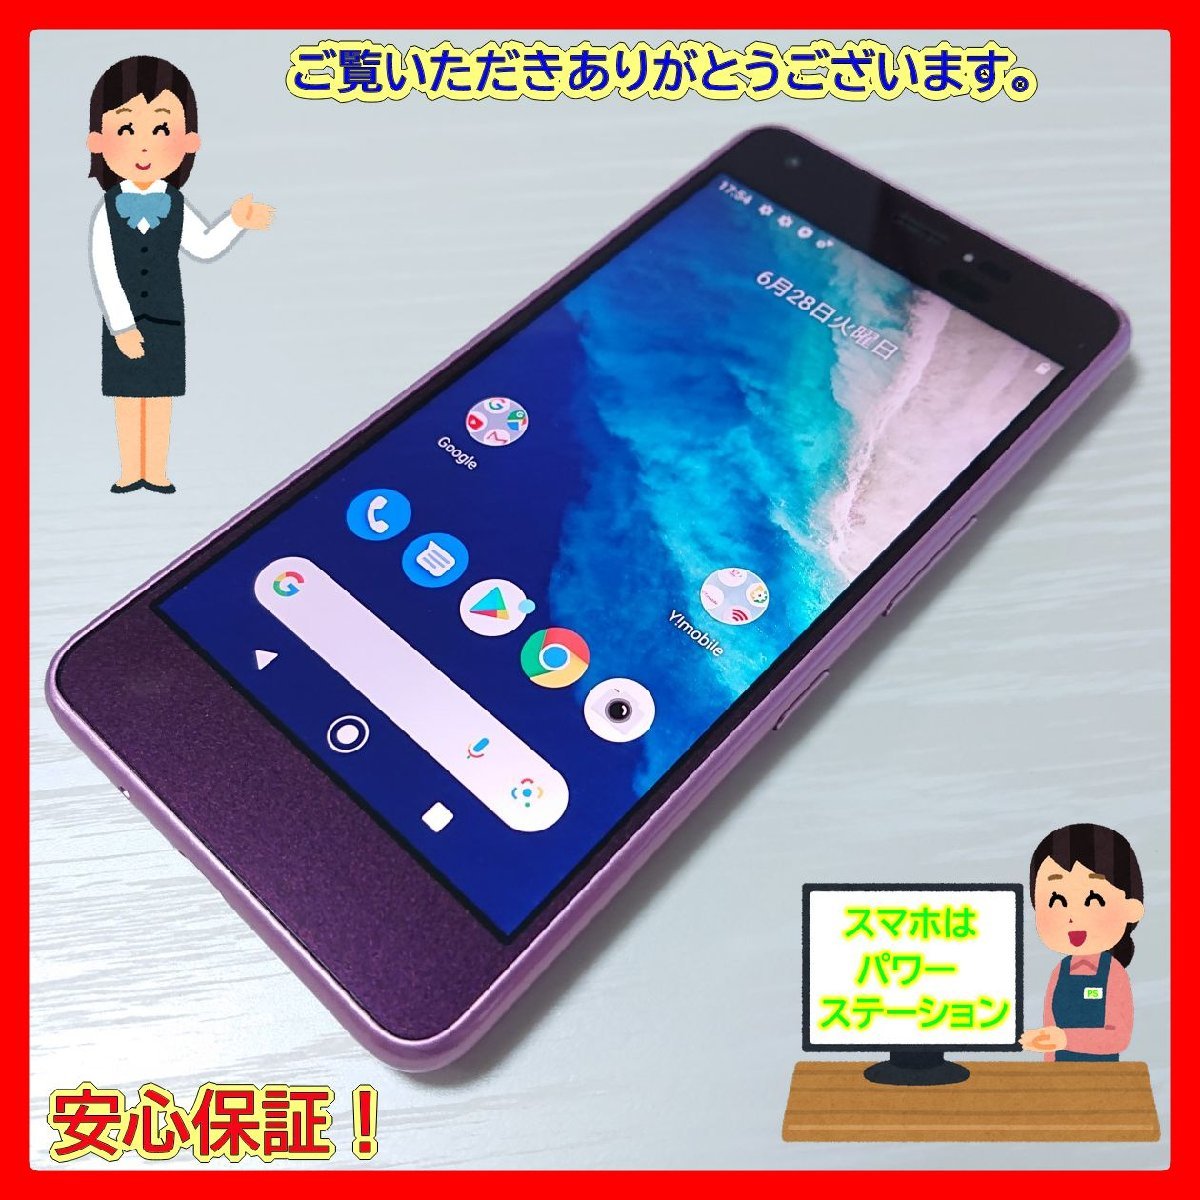 京セラ Android One S6[32GB] Y!mobile ブラック【安心保証】 - clicvendas.com